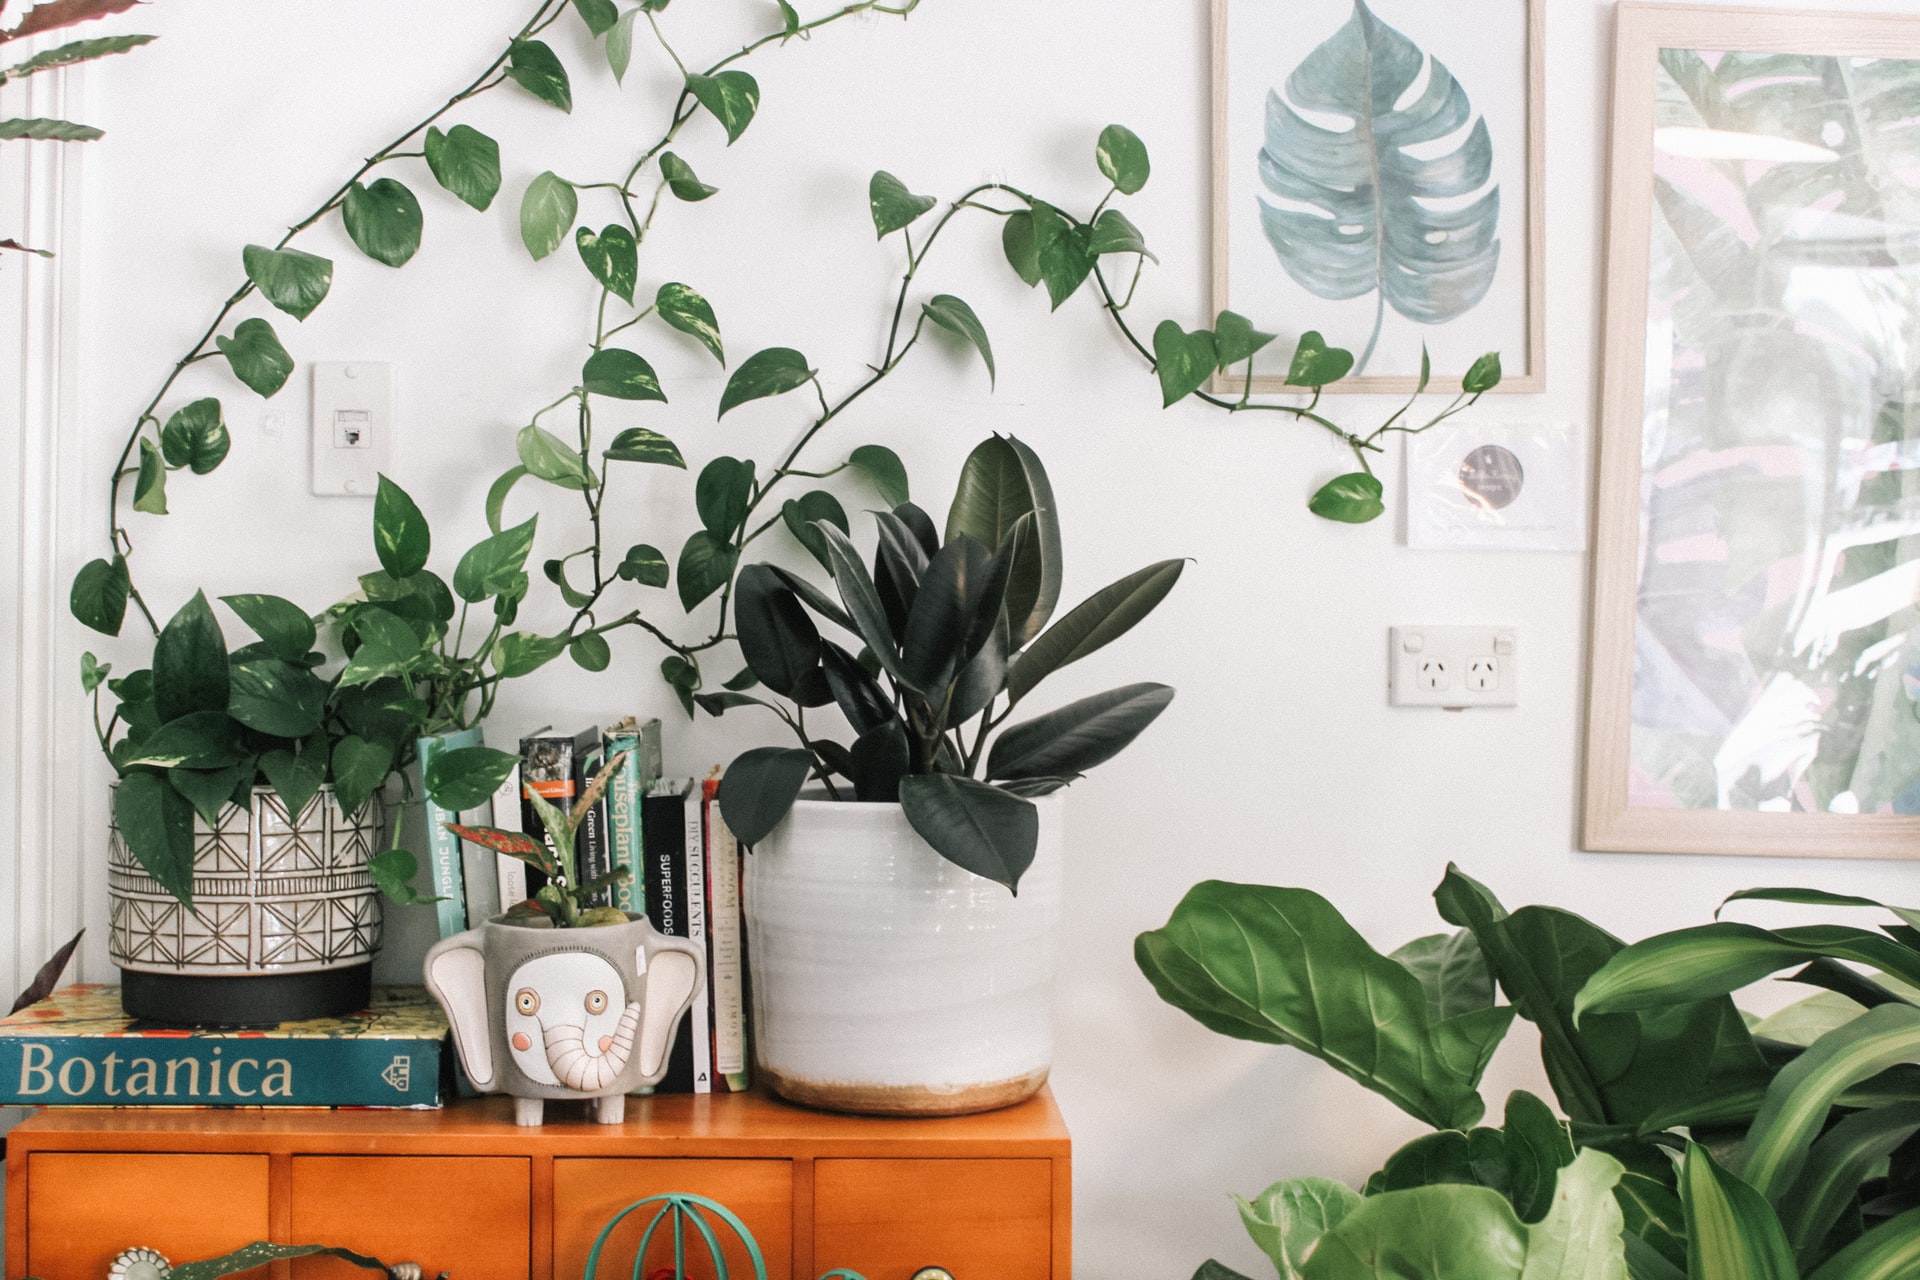 Žalioji oazė namuose – kaip išsirinkti kambarinius augalus ir juos prižiūrėti?